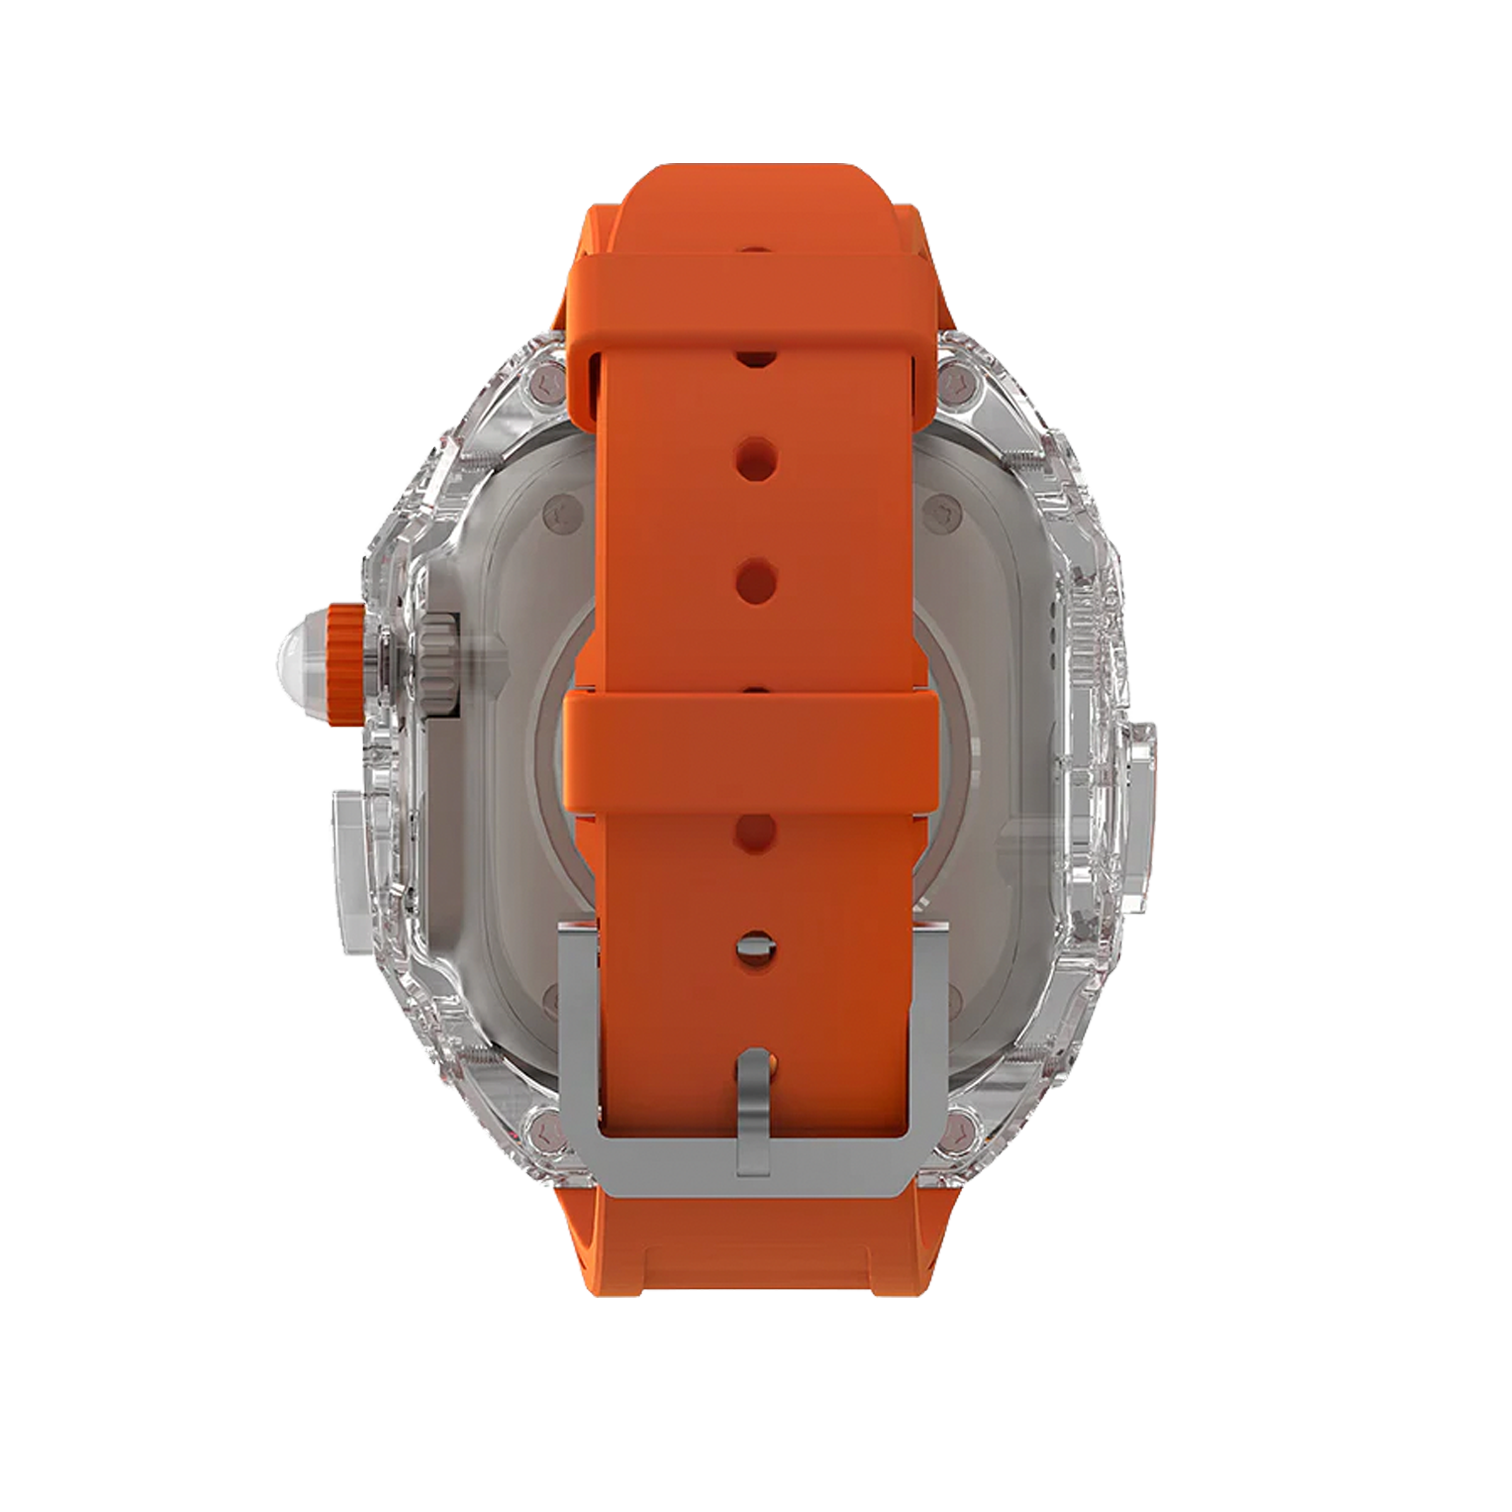 Apple Watch Case Kyoto - Orange